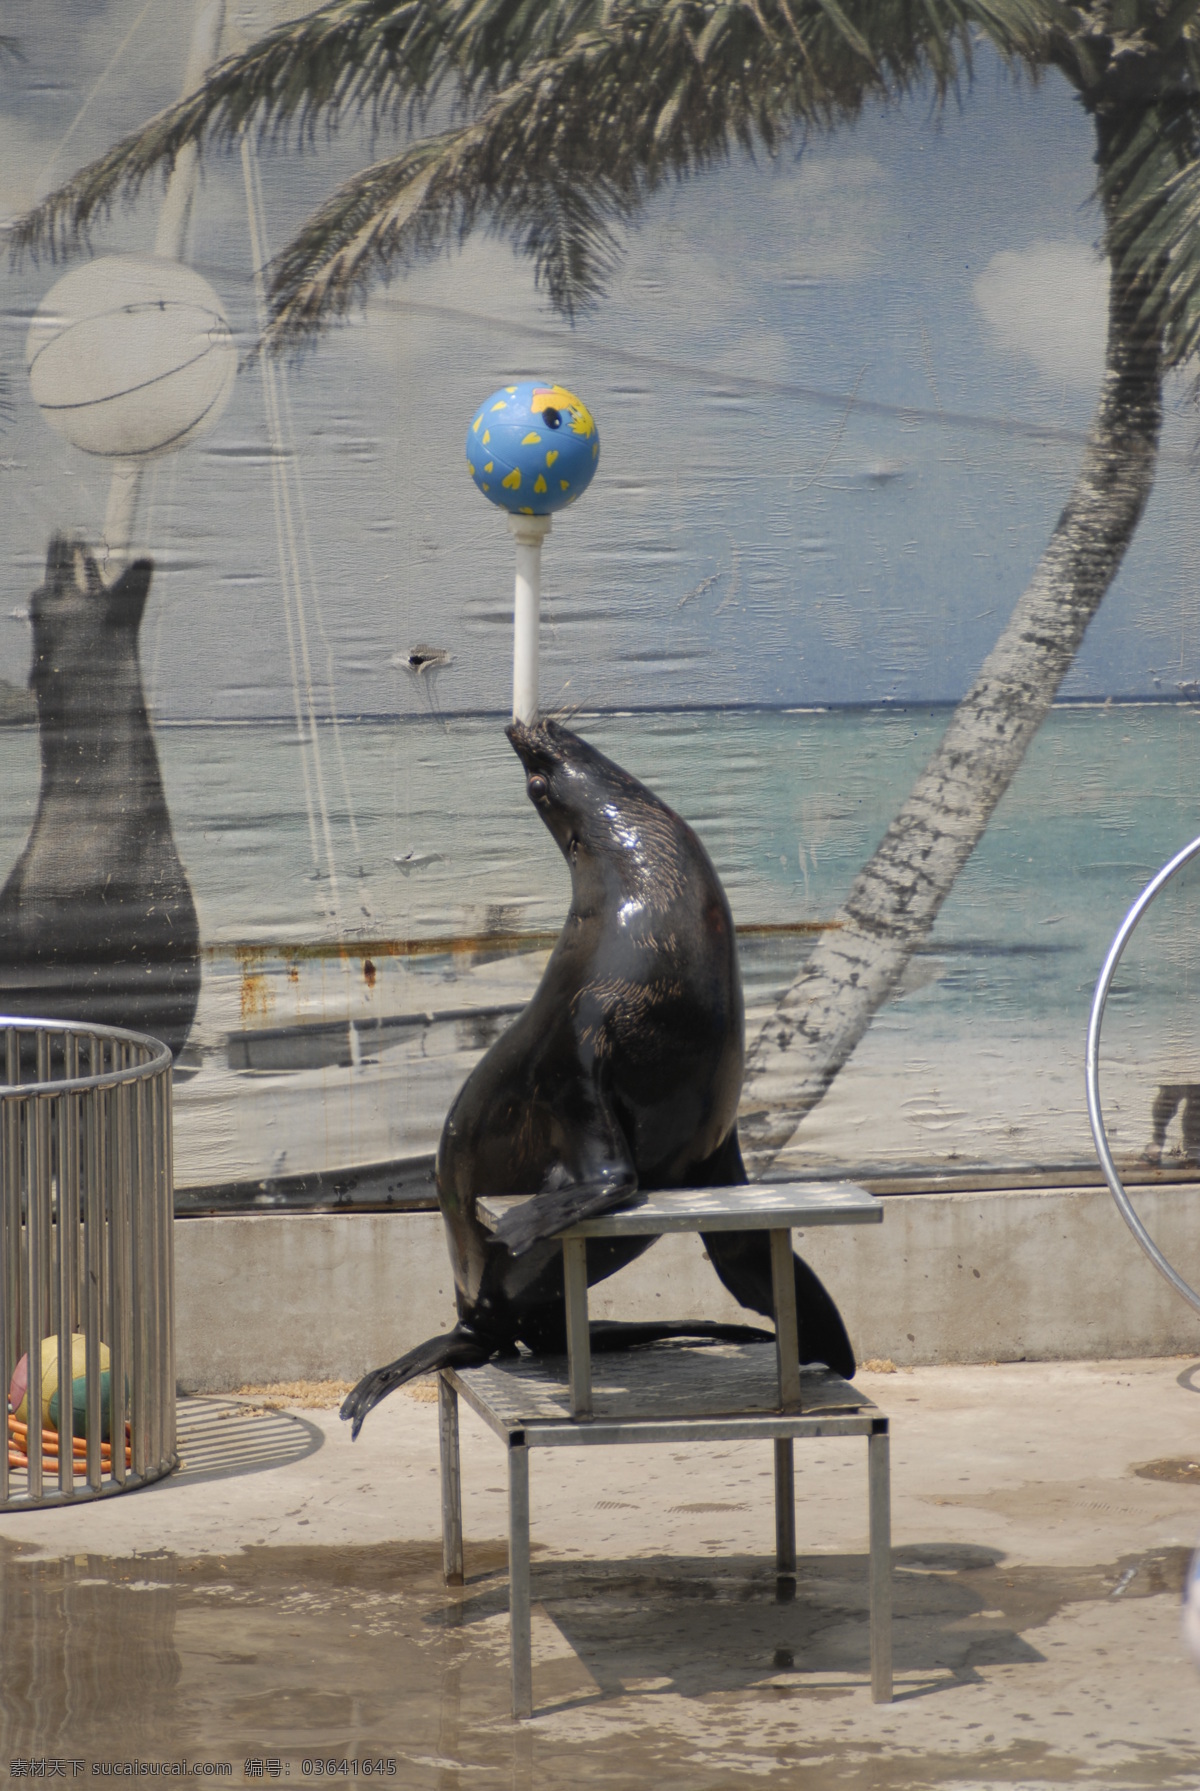 海狮表演 海狮 球 动物园 海洋生物 生物世界 摄影图库